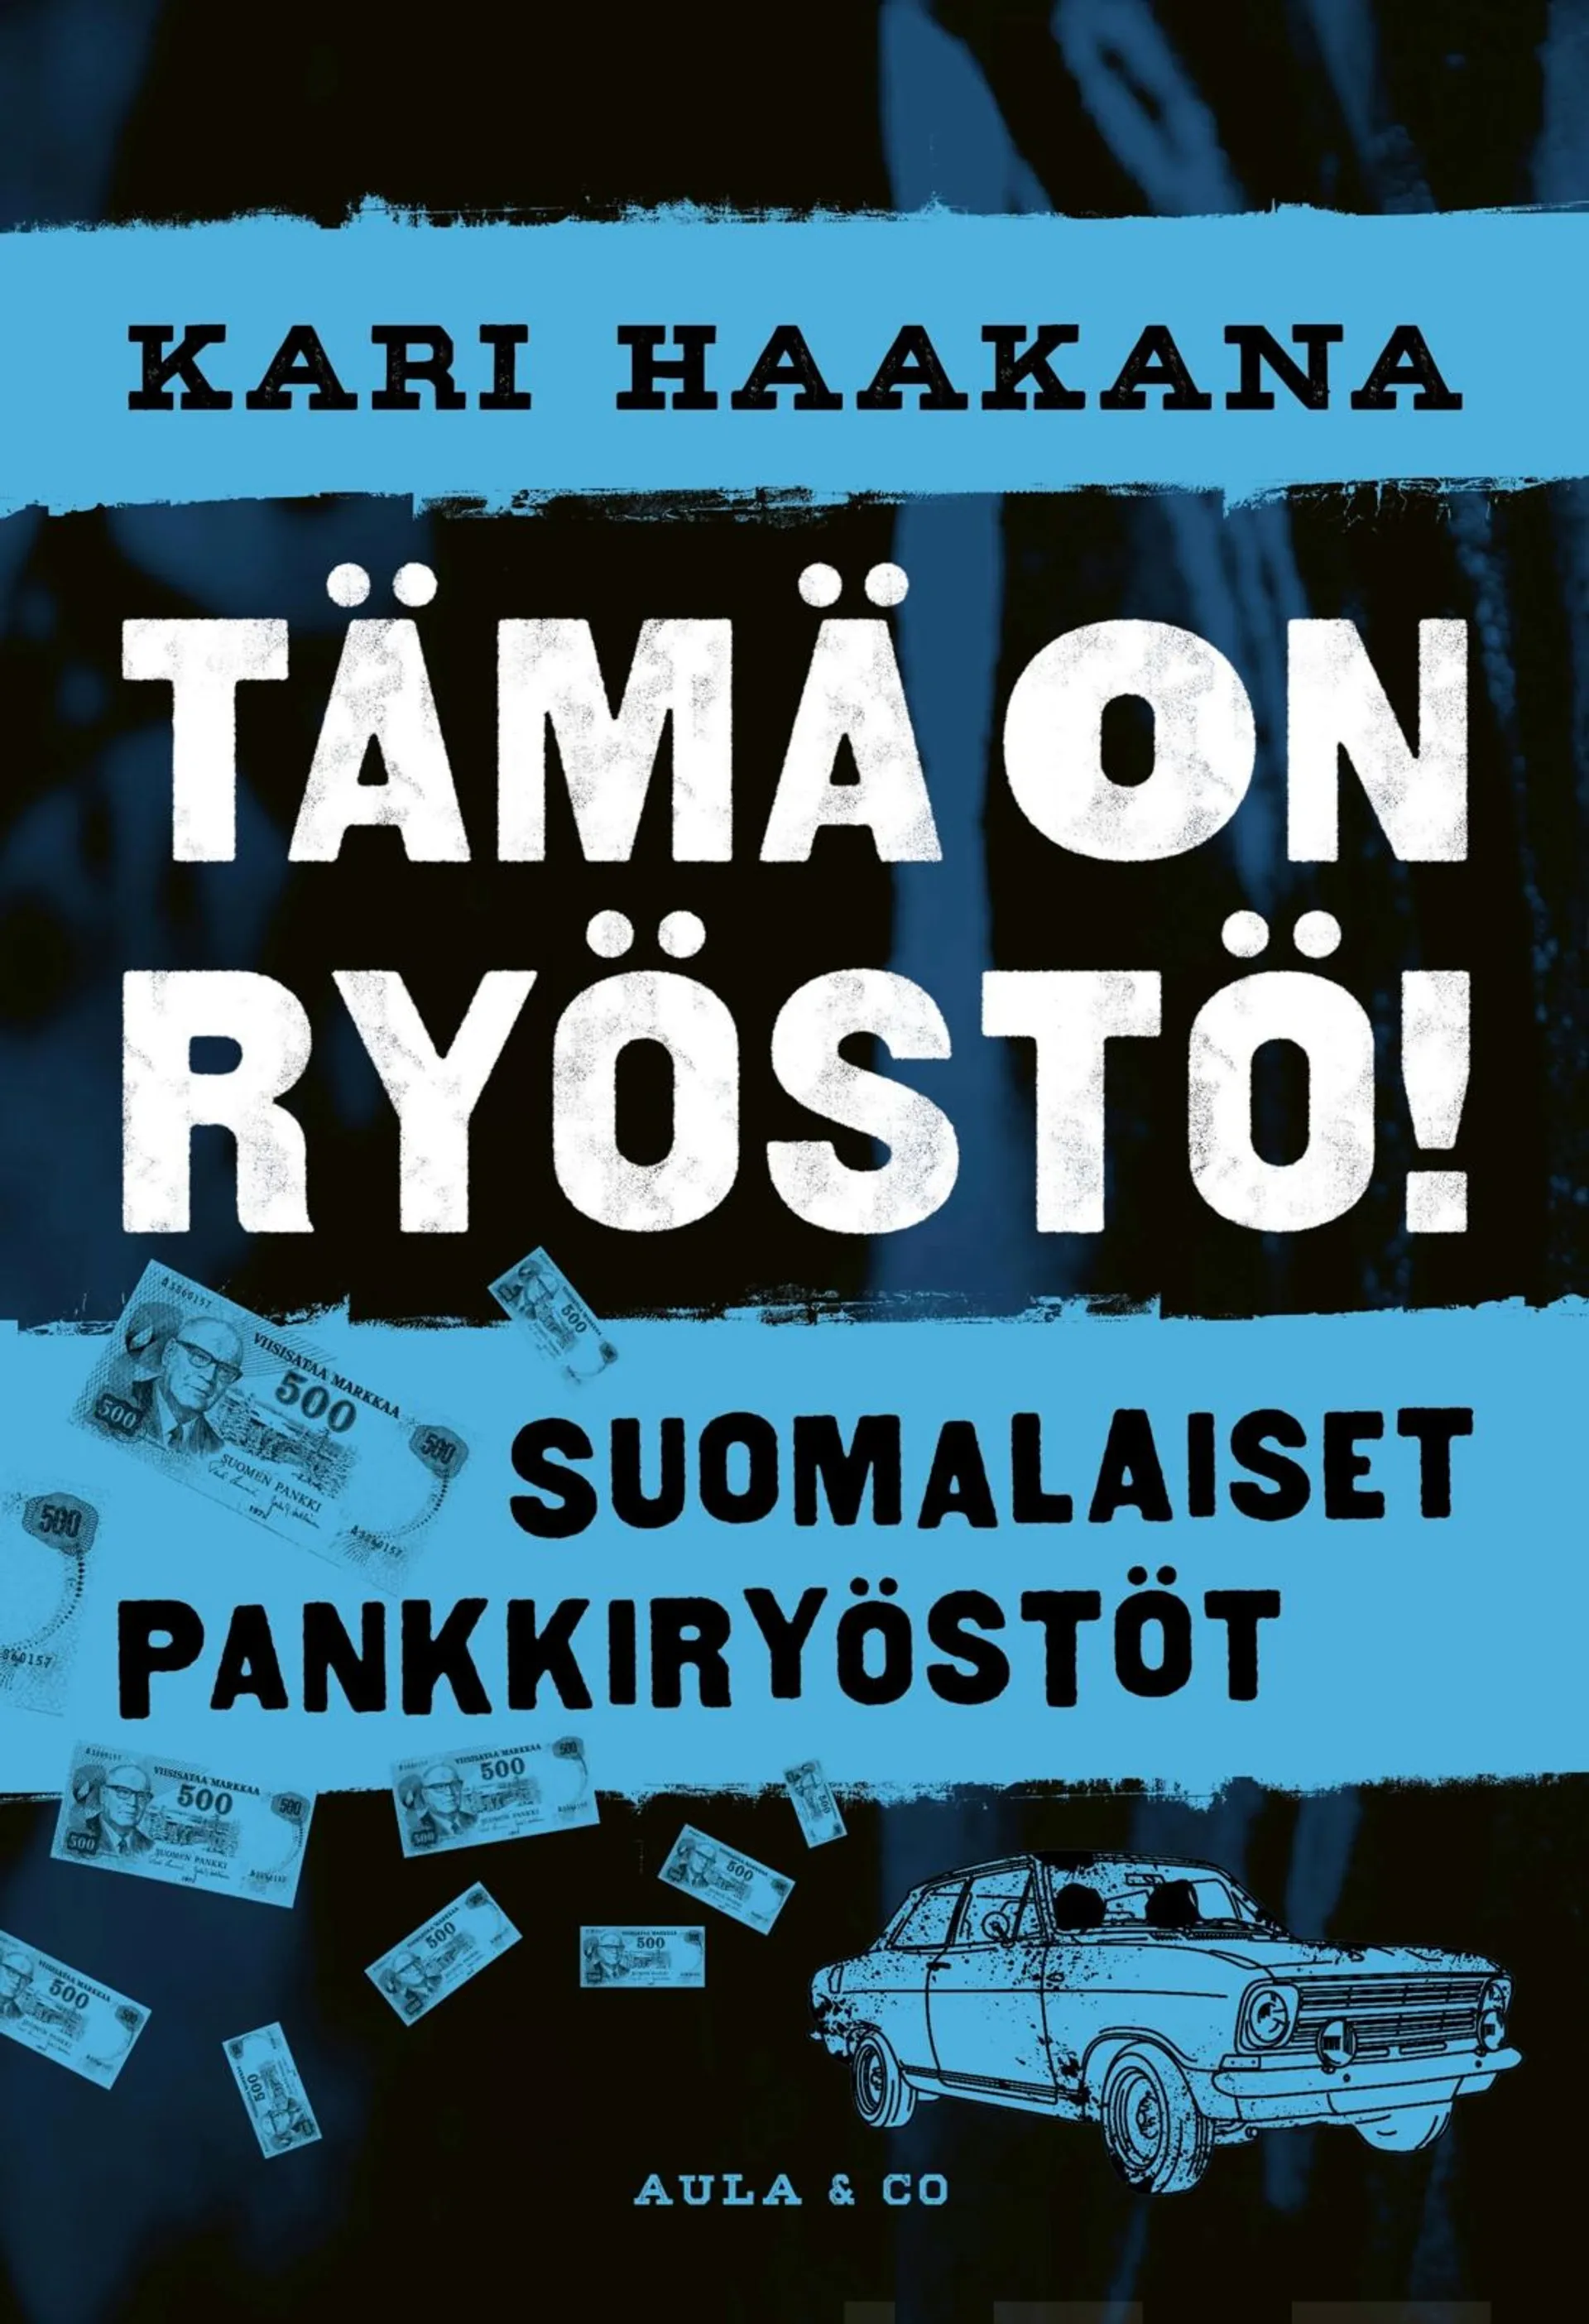 Haakana, Tämä on ryöstö! - Suomalaiset pankkiryöstöt 1906-2022